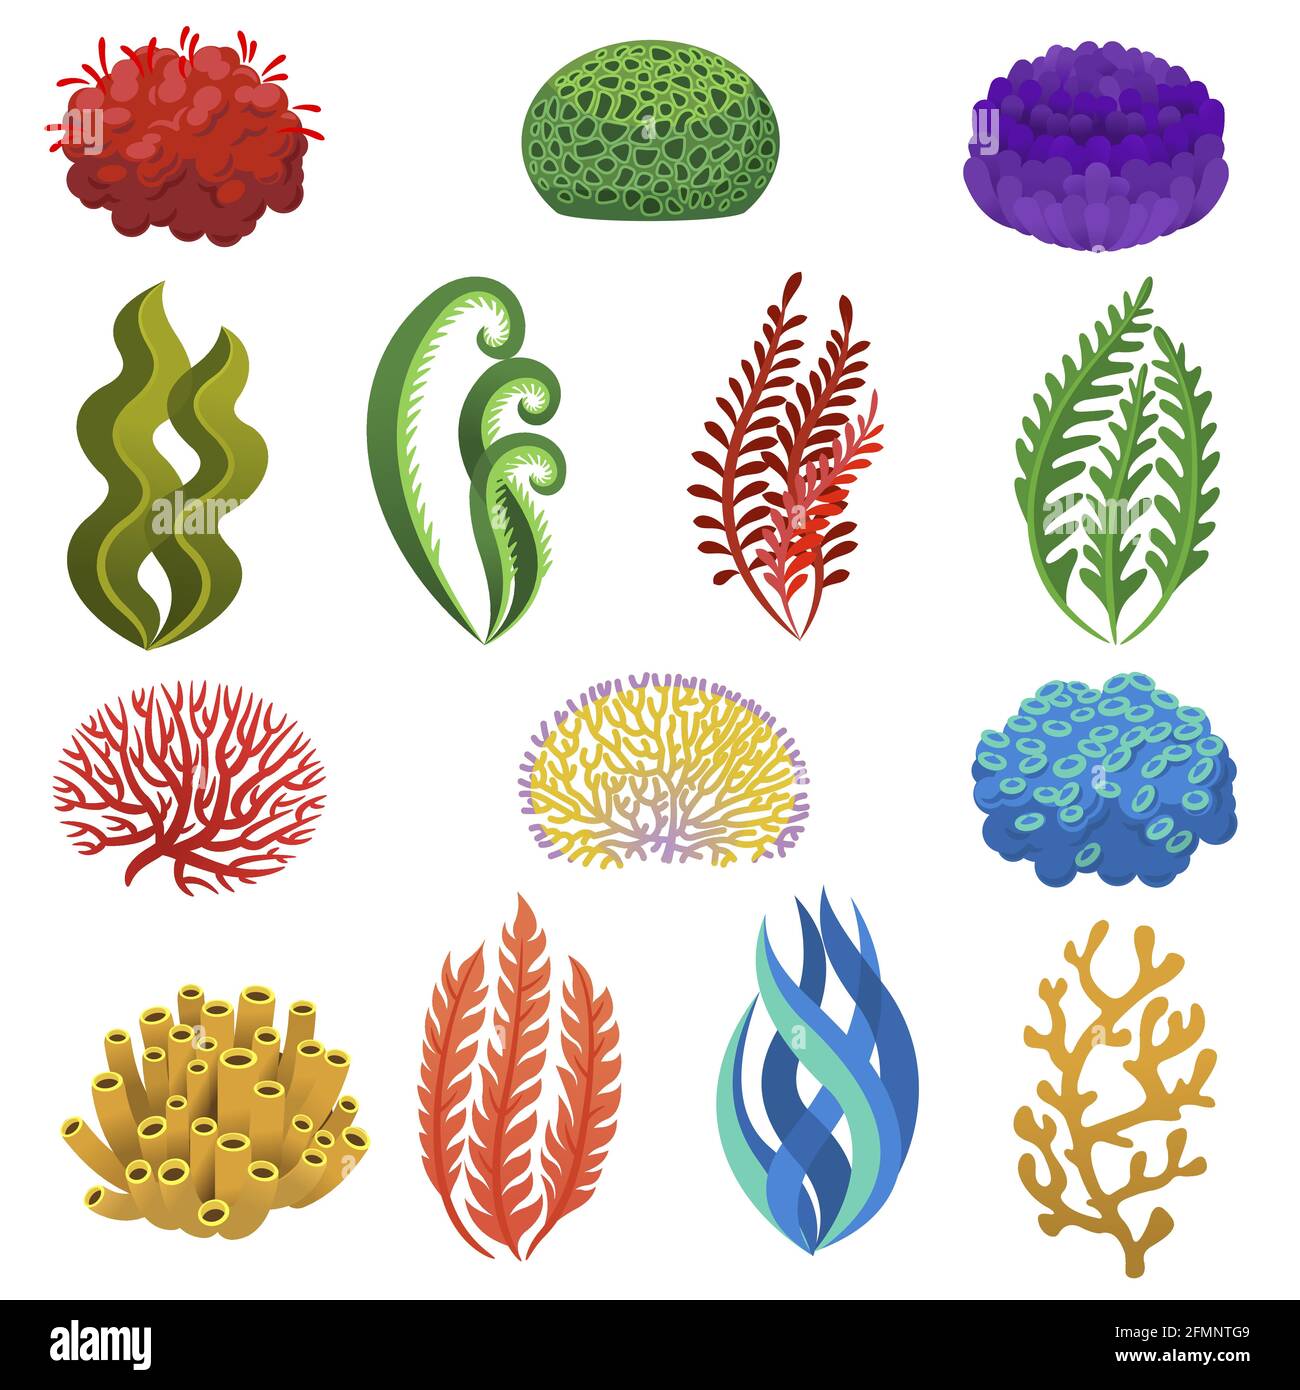 Alghe e coralli. Cartoon animali e piante della barriera corallina subacquea. Acquario, flora oceanica e marina, insieme vettoriale elementi floreali marini. Anemoni e alghe che piantano stagcape, icone acquatiche Illustrazione Vettoriale